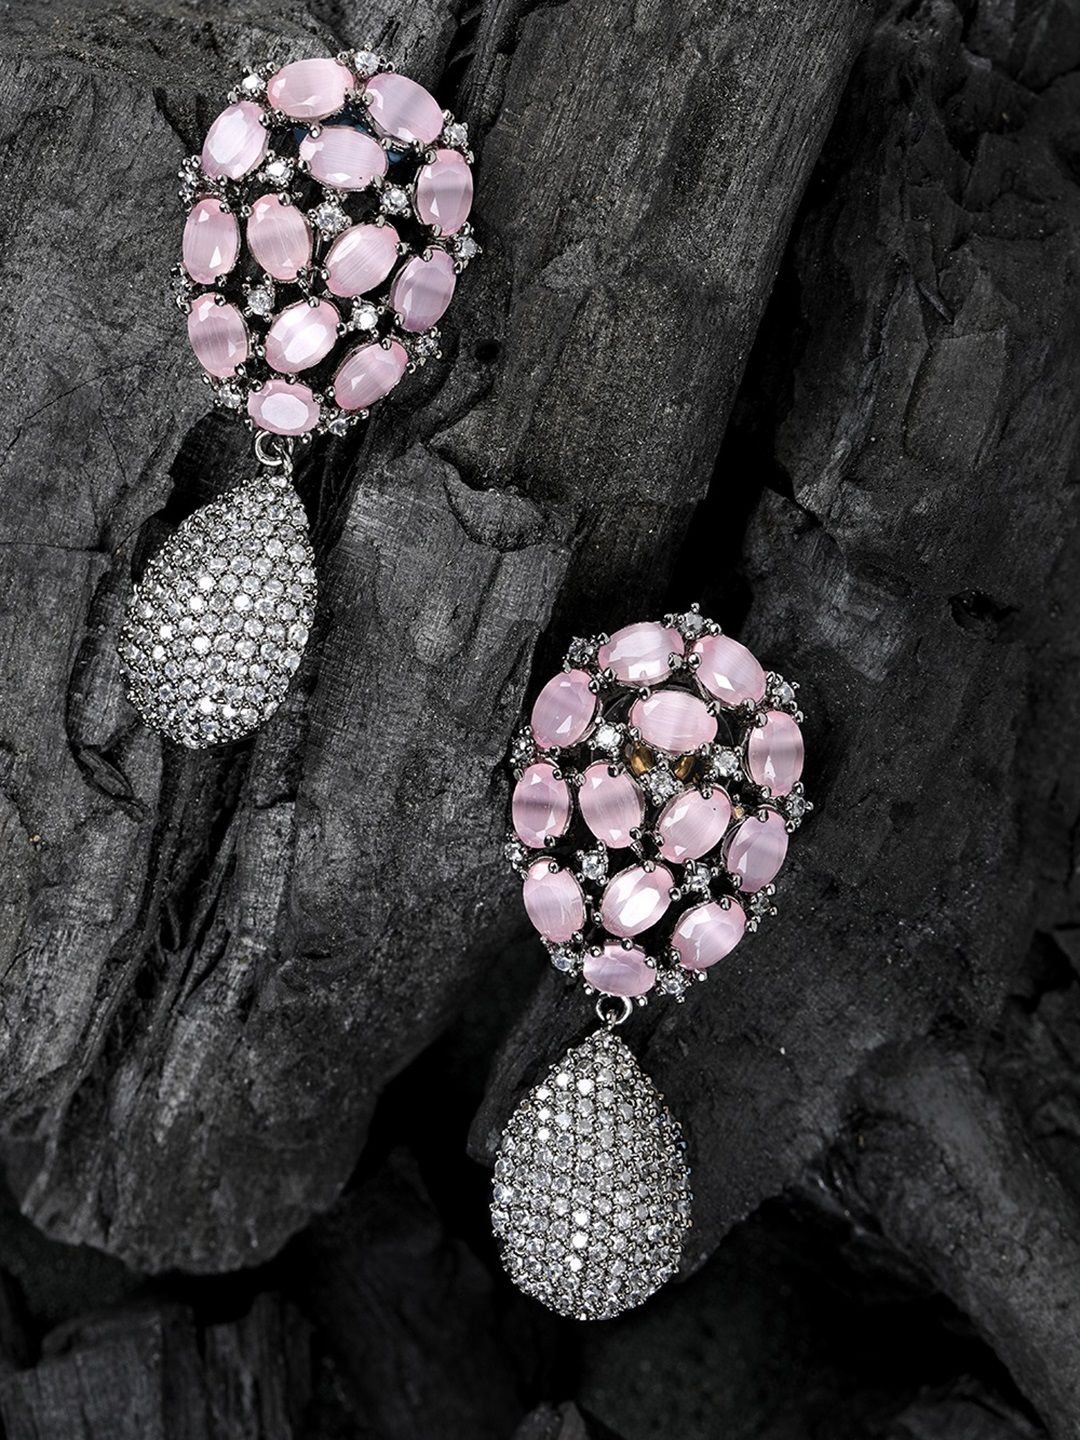 Priyaasi Pink & Gunmetal-Toned Silver-Plated Handcrafted Teardrop Shaped Drop Earrings Price in India